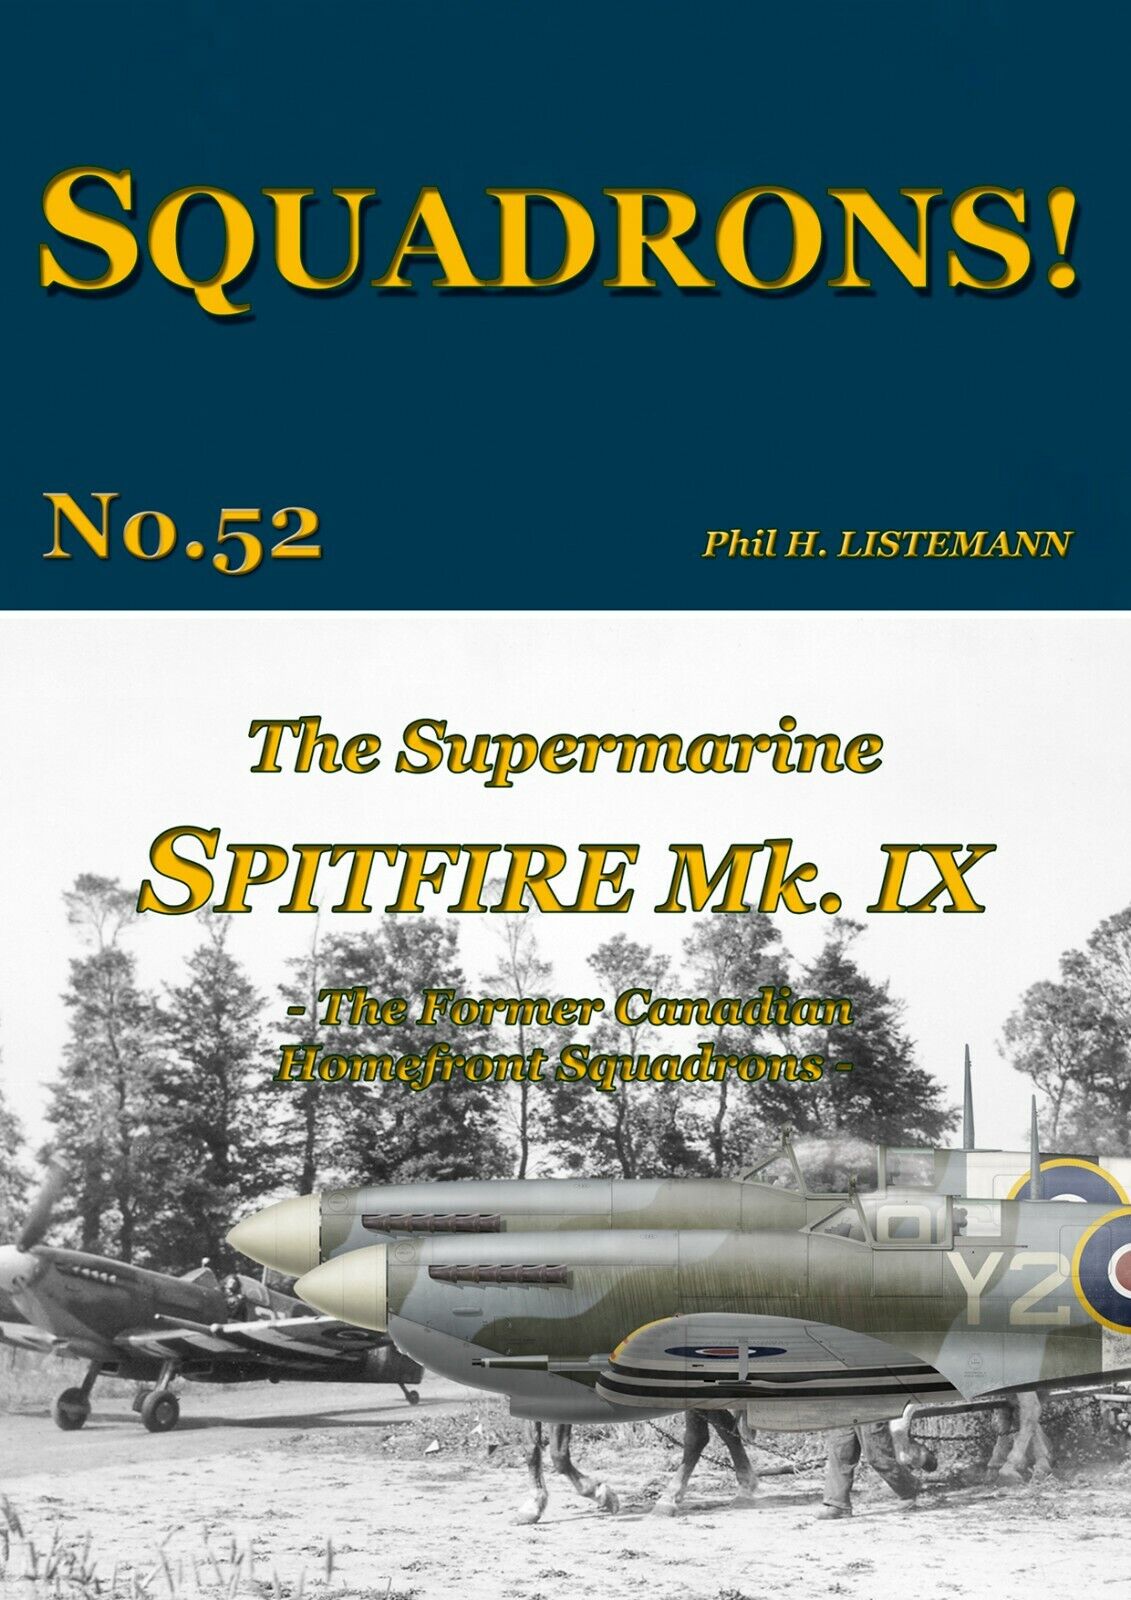 SQUADRONS No. 52 - The Spitfire Mk IX - (441, 442 & 443 Sqns) - Rev April 24